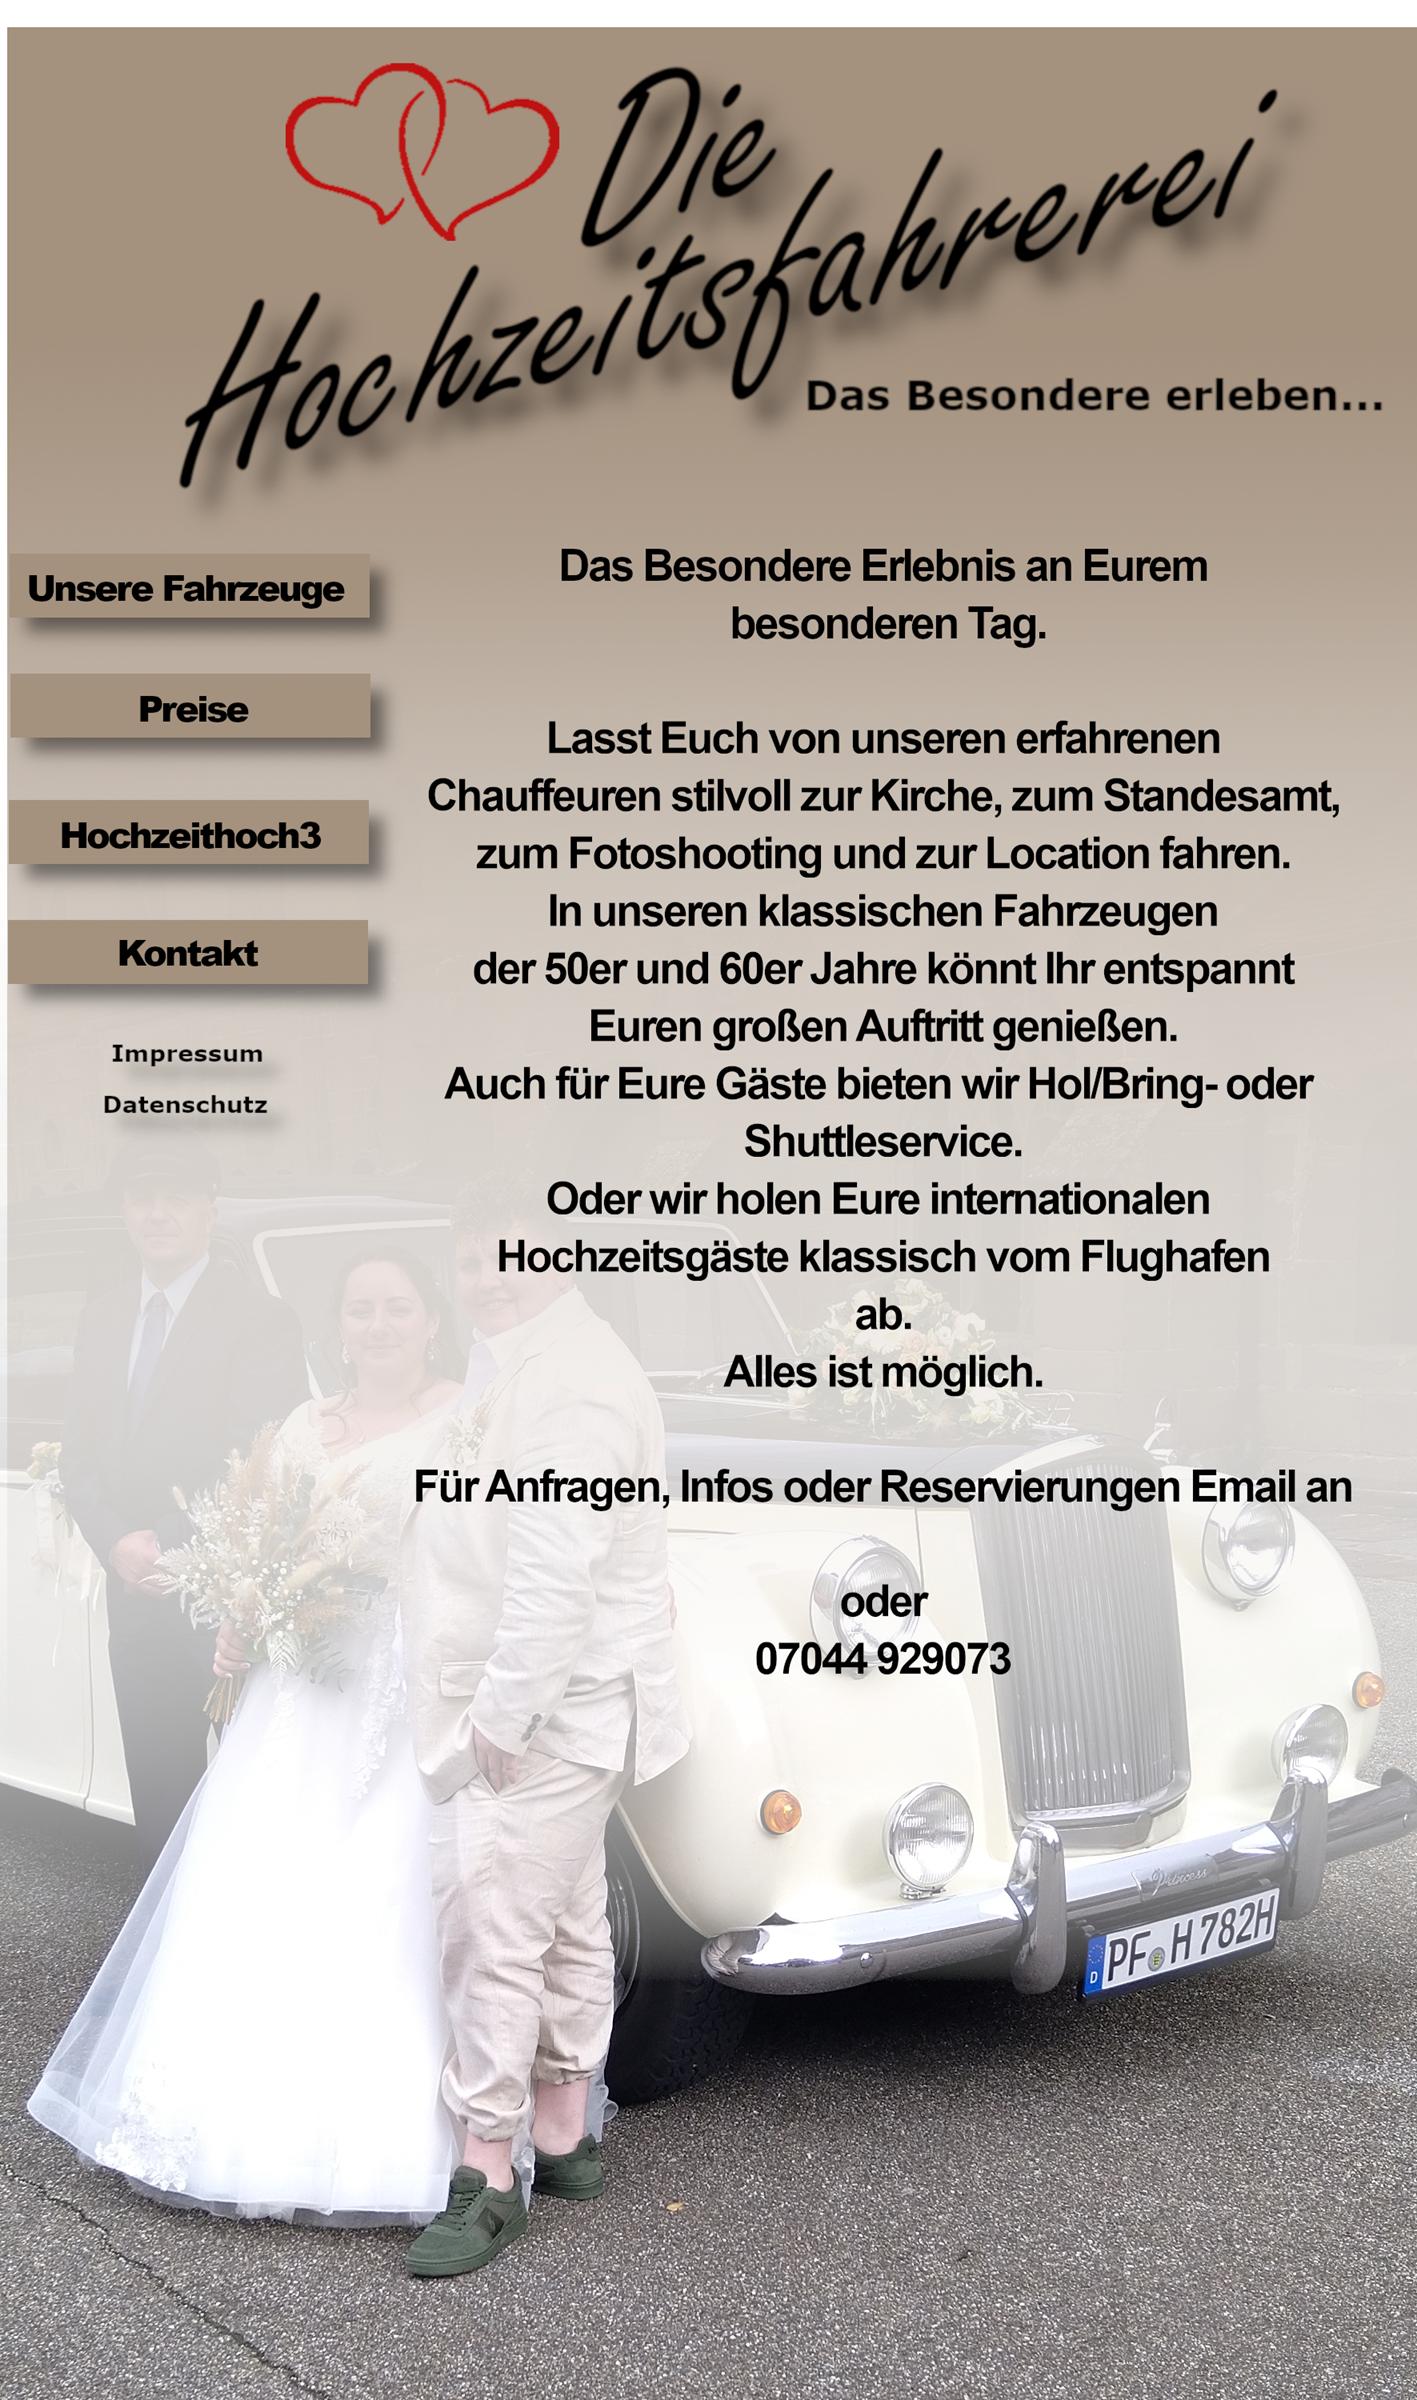 Startseite Homepage Hochzeitsfahrerei.jpeg